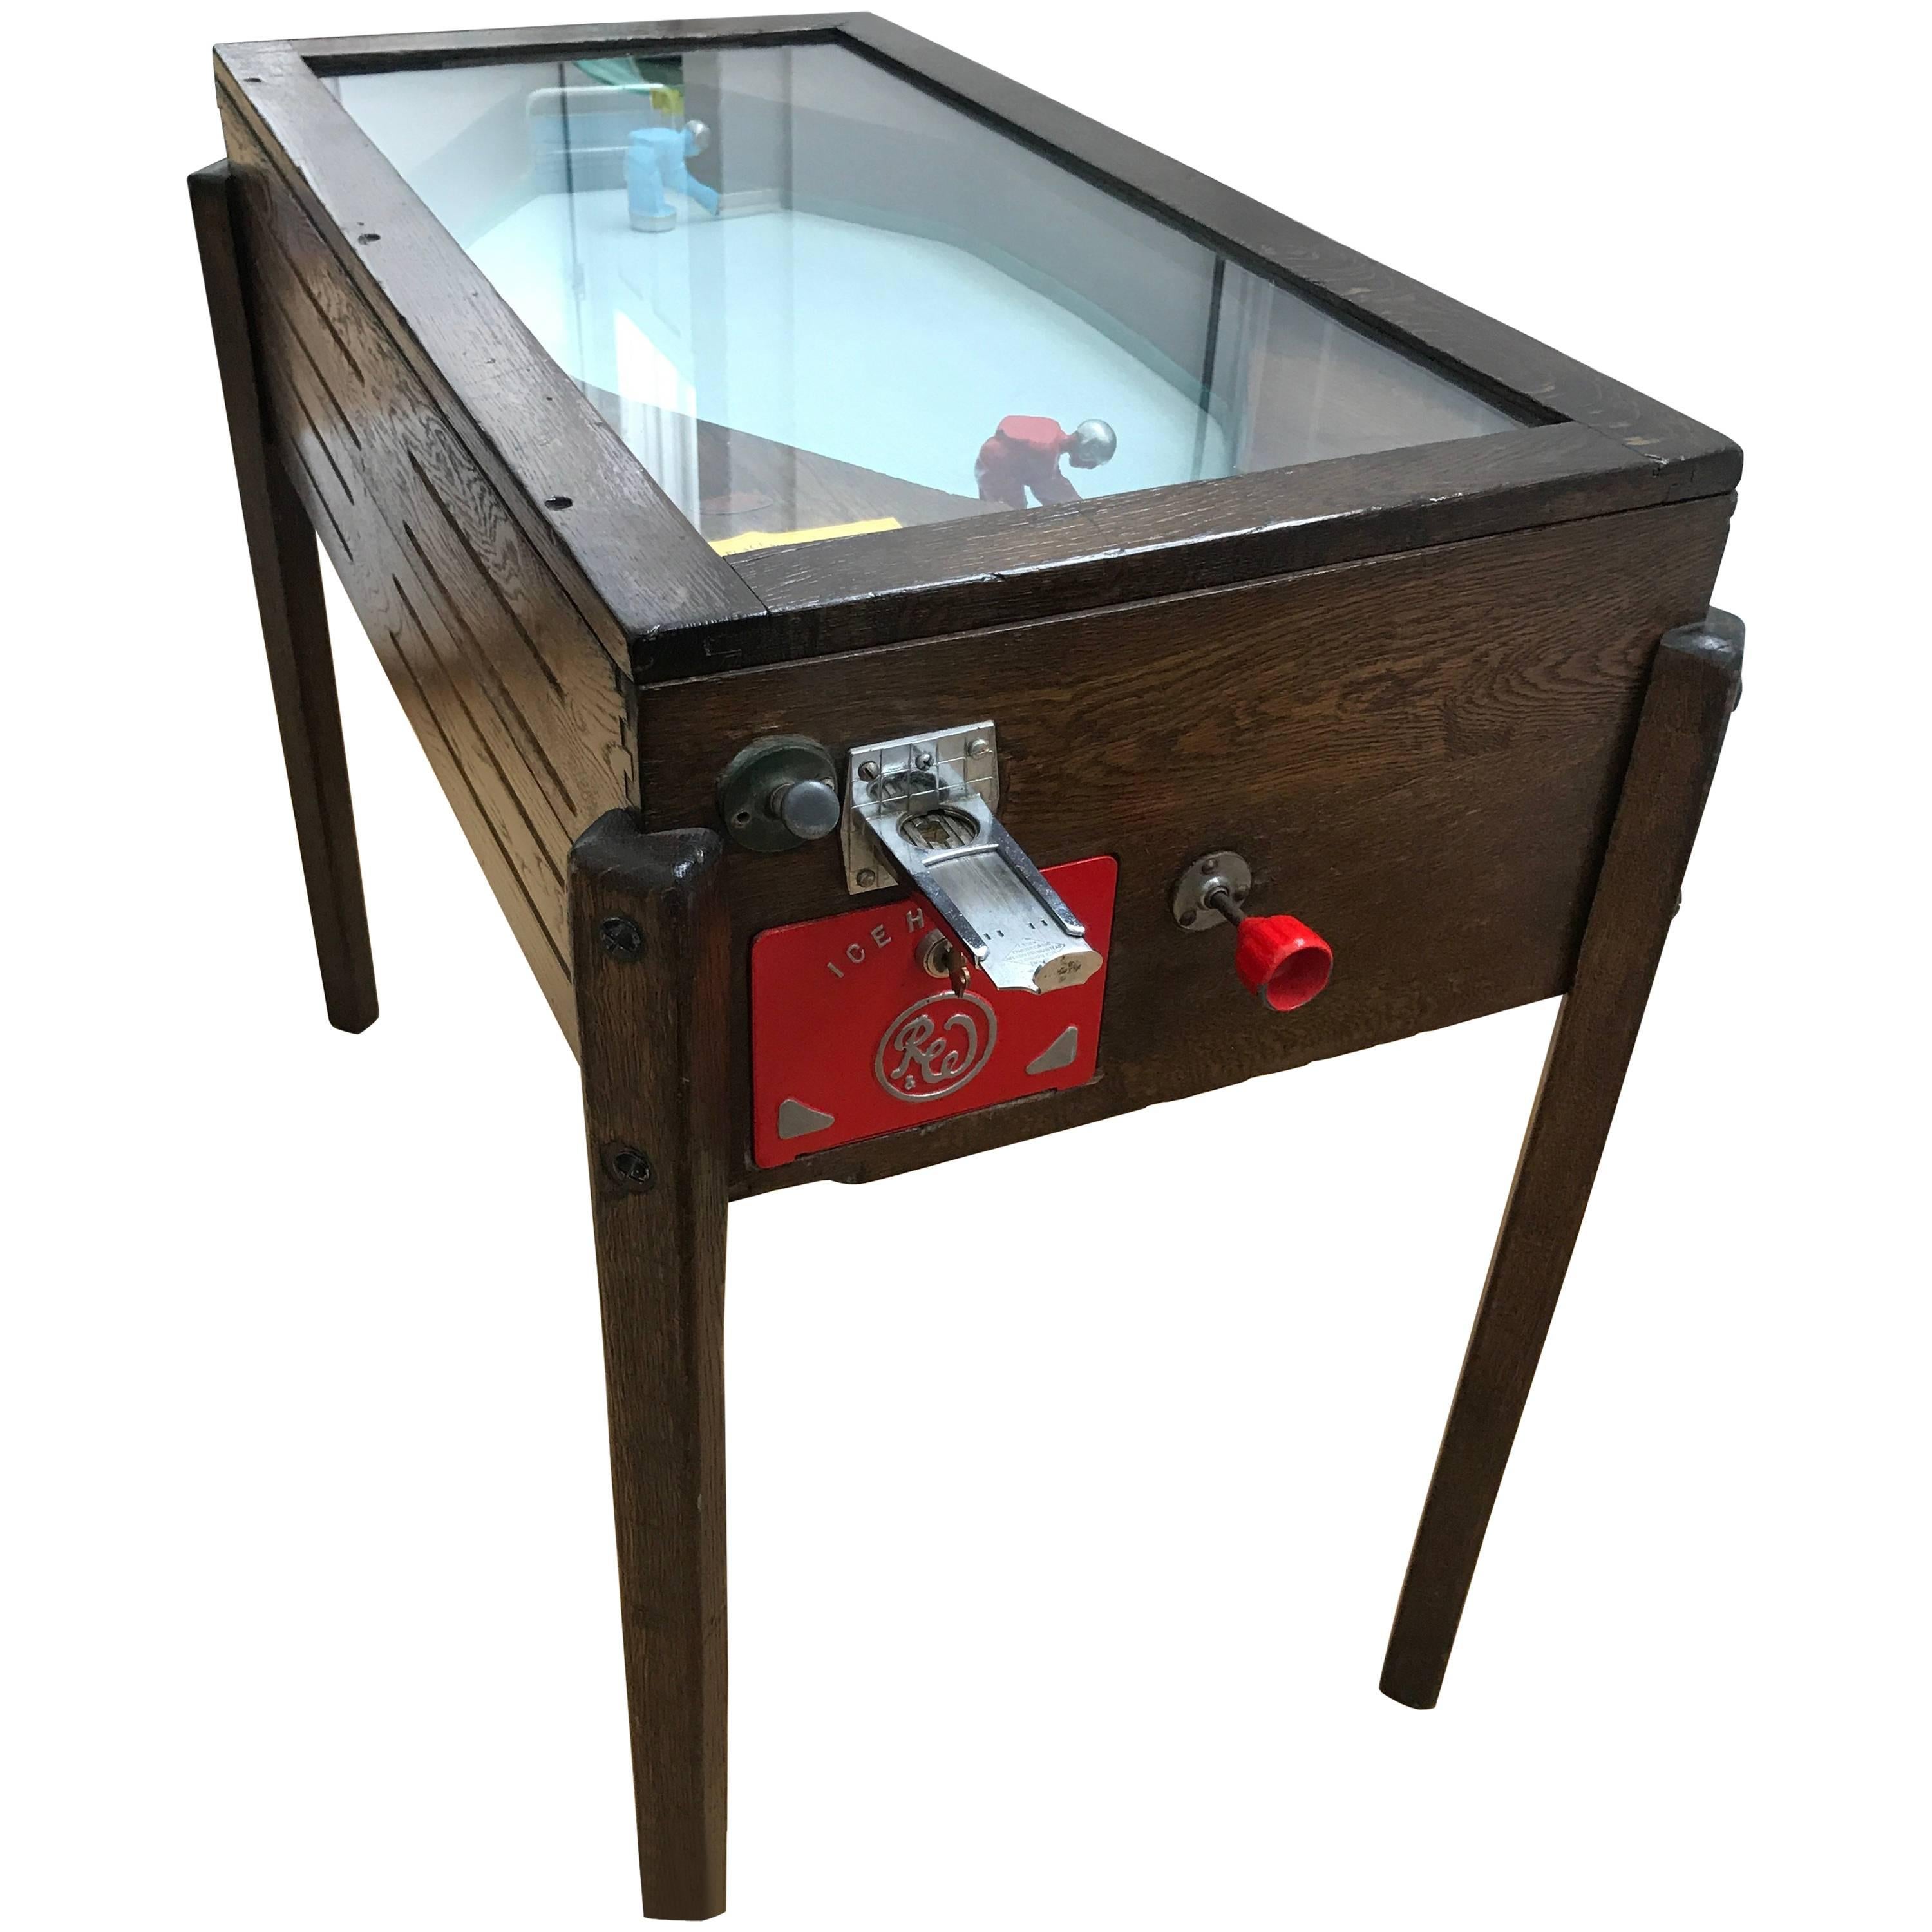 1950s Ruffler & Walker Ice Hockey Coin-Op Game in Solid Oak Cabinet For Sale